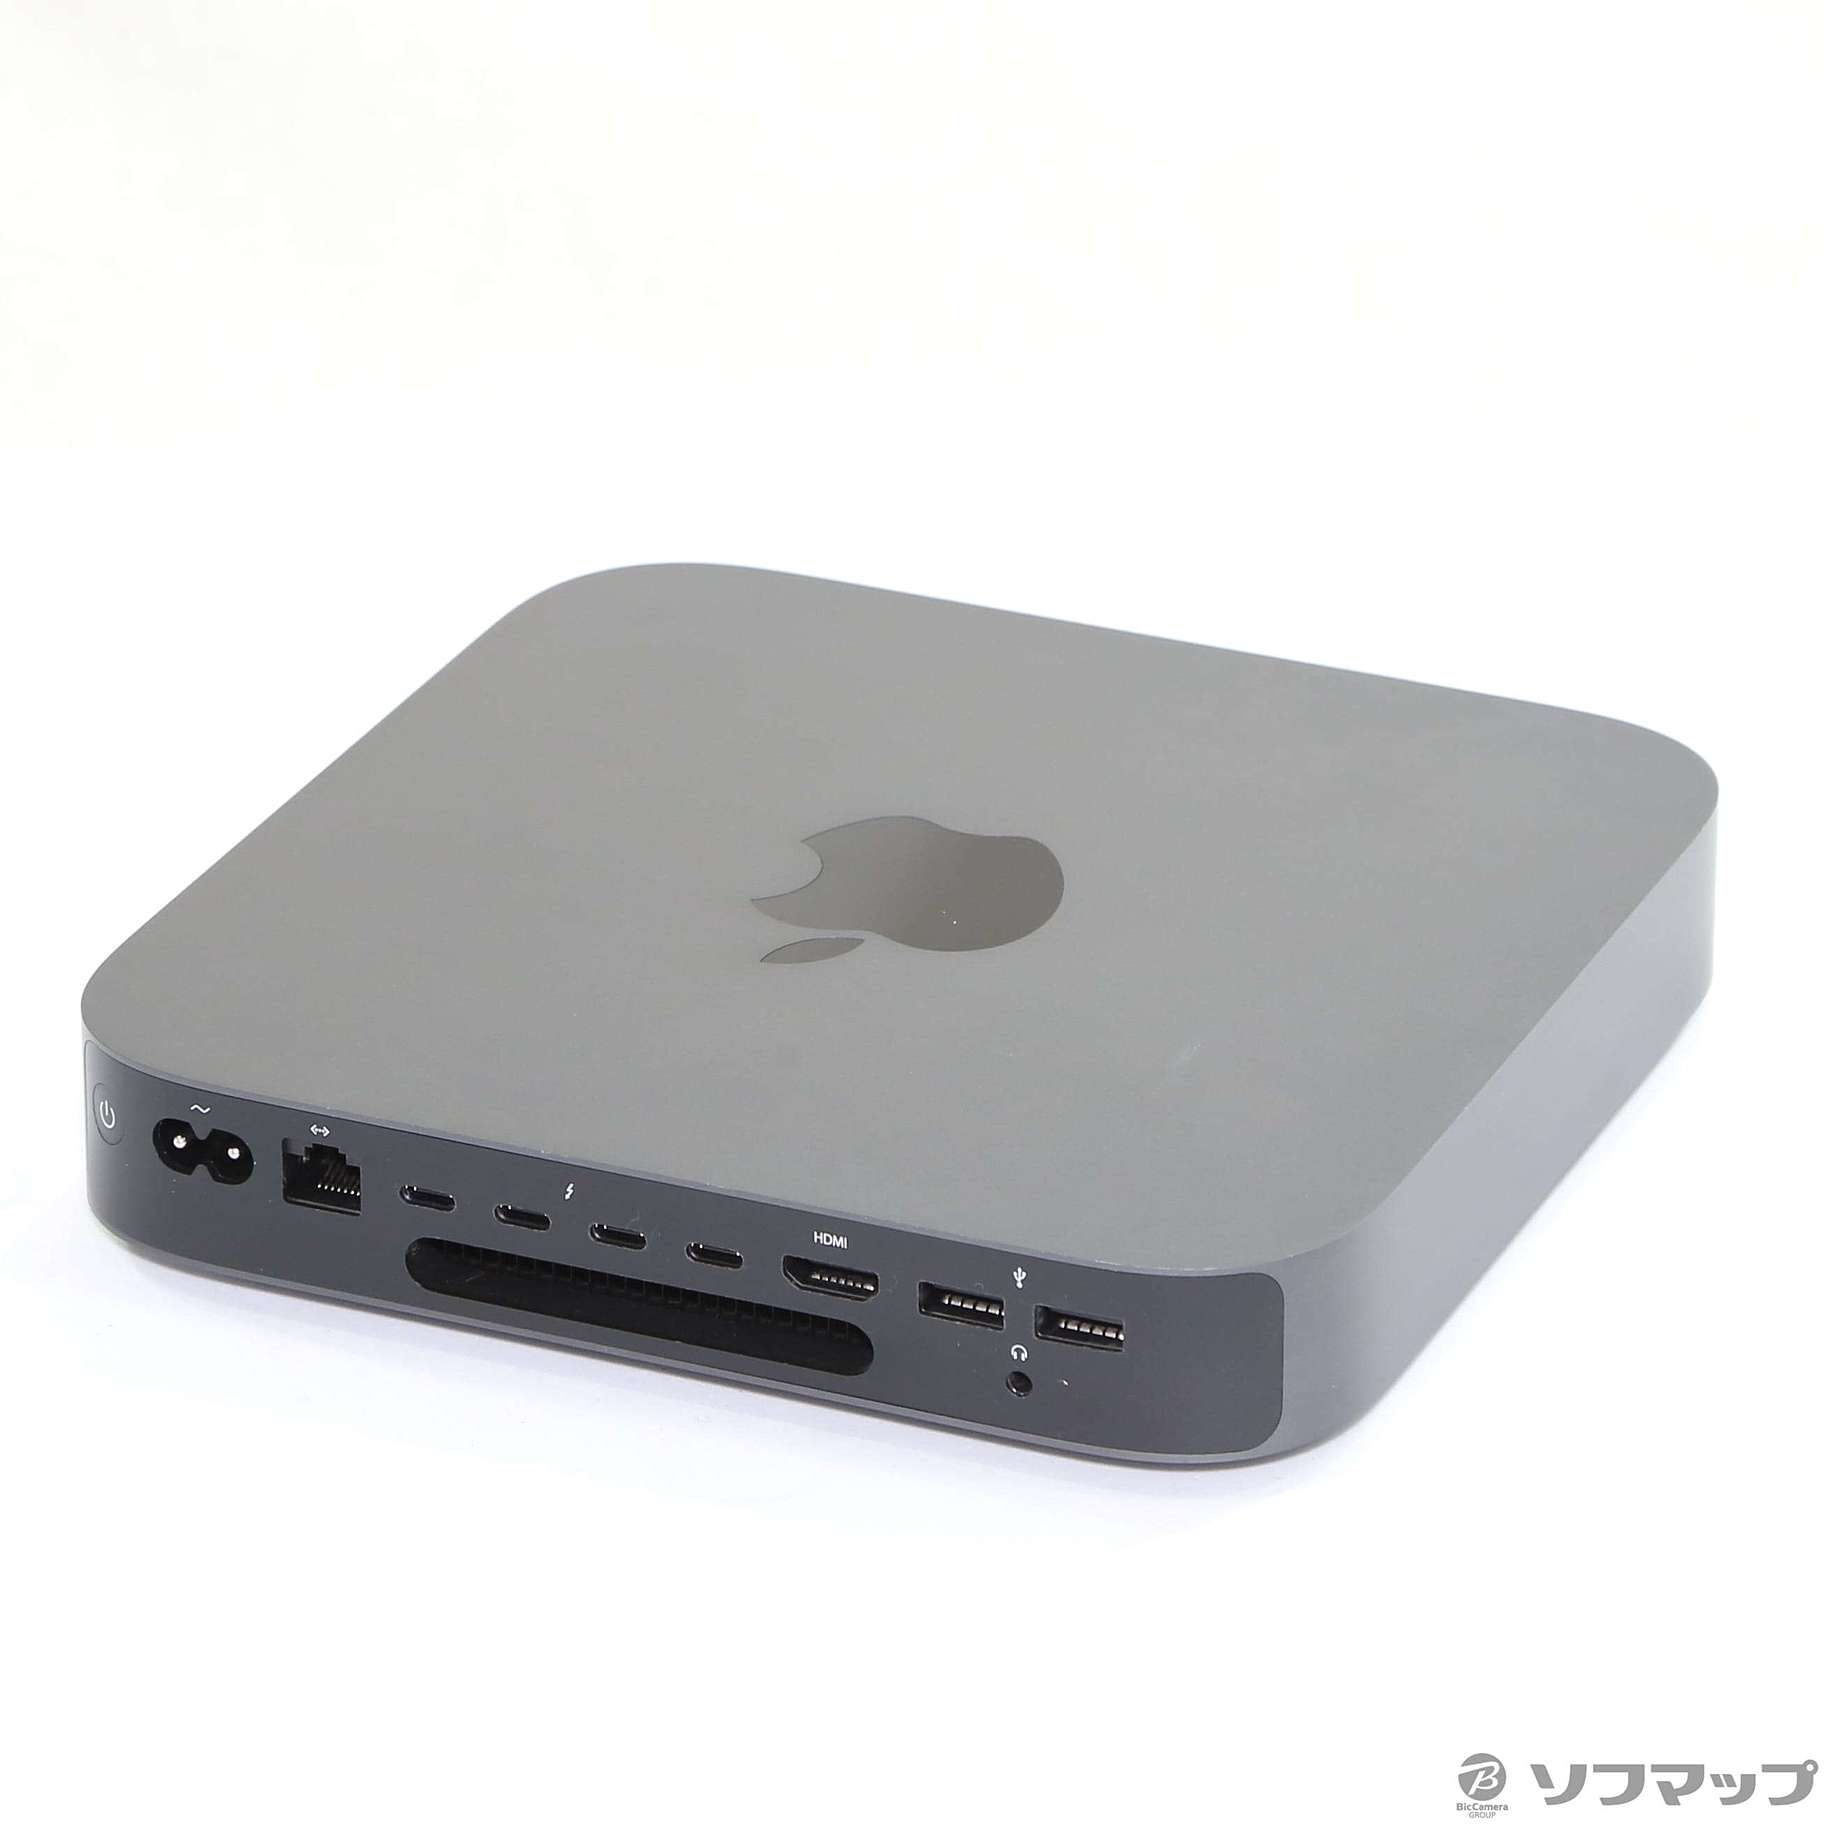 Mac mini 2018 core i5 256GB MRTT2J/A